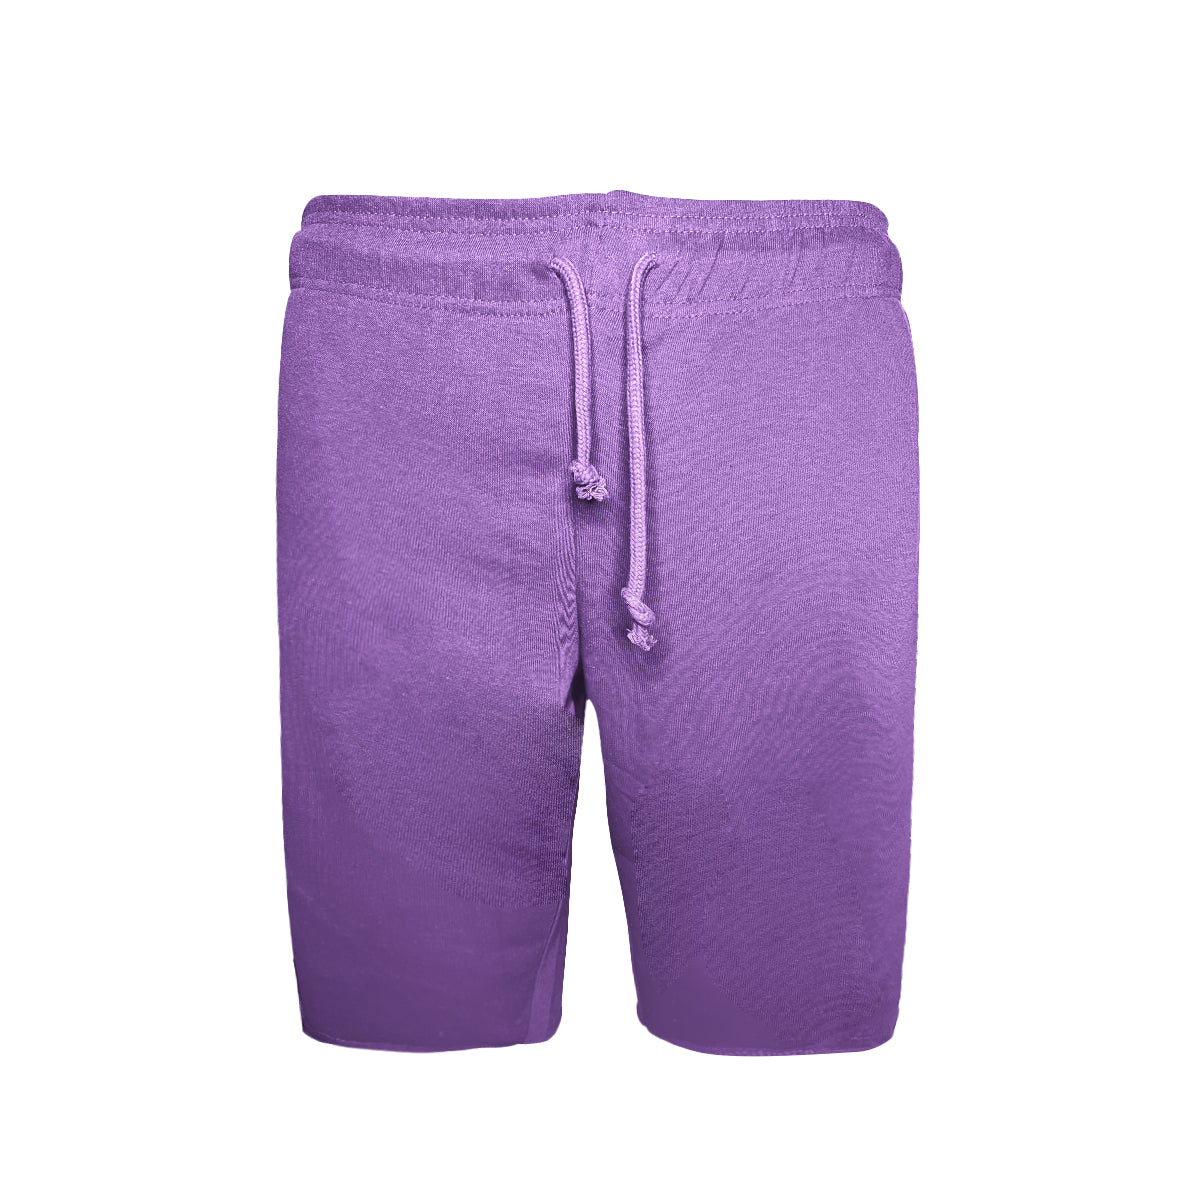 6030 - Adult Smart Shorts- Lavendar Color